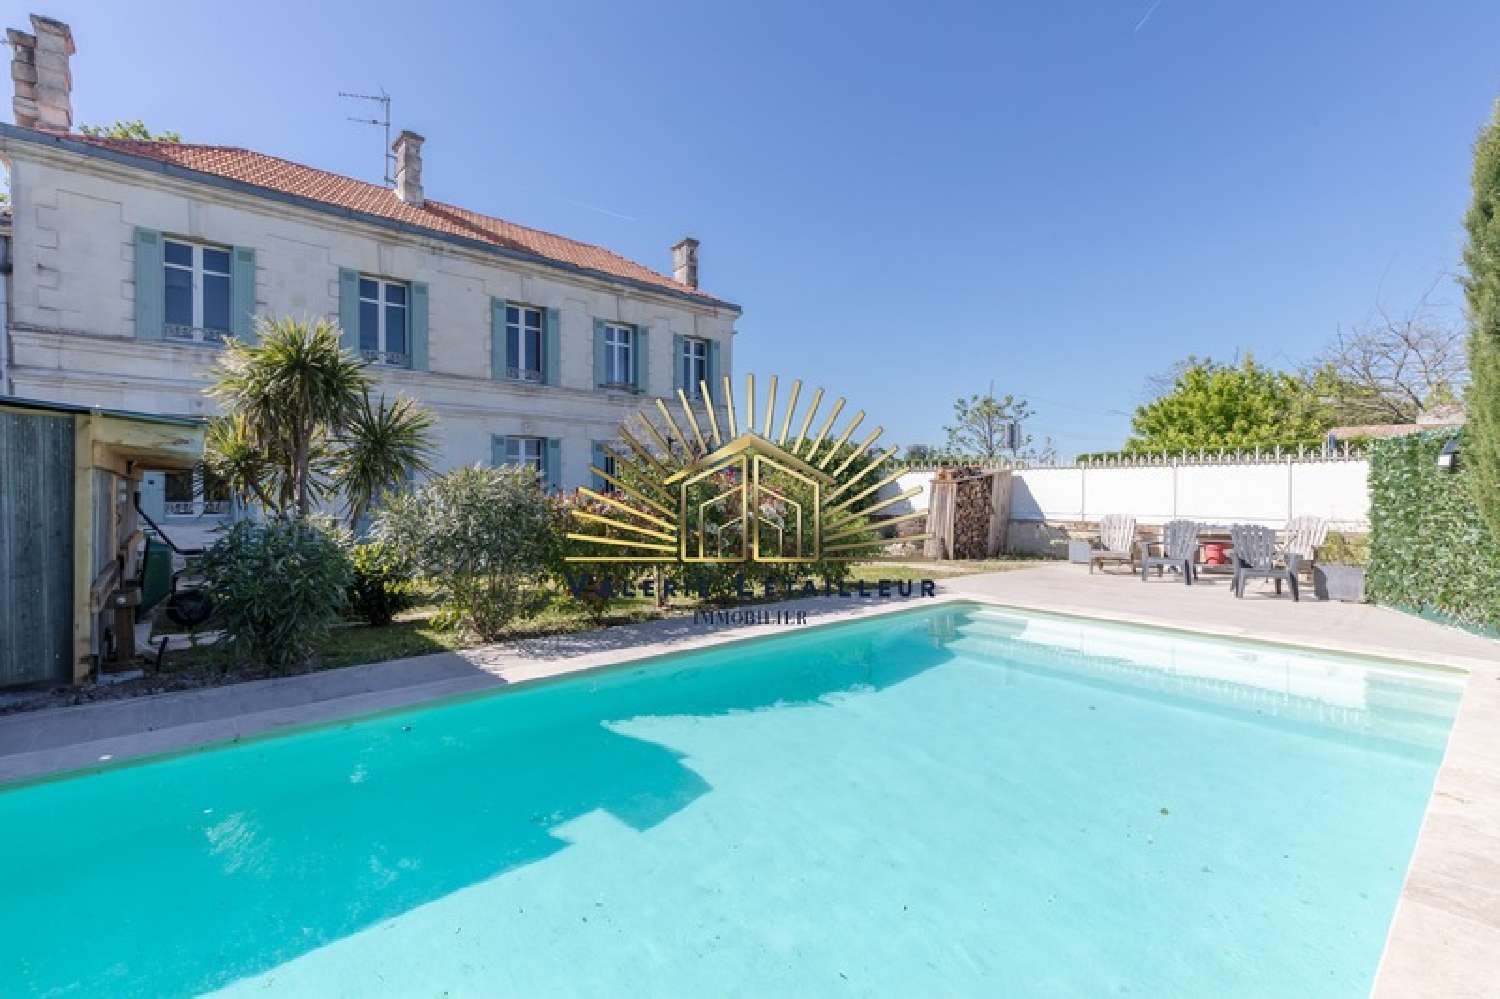  for sale house Izon Gironde 1